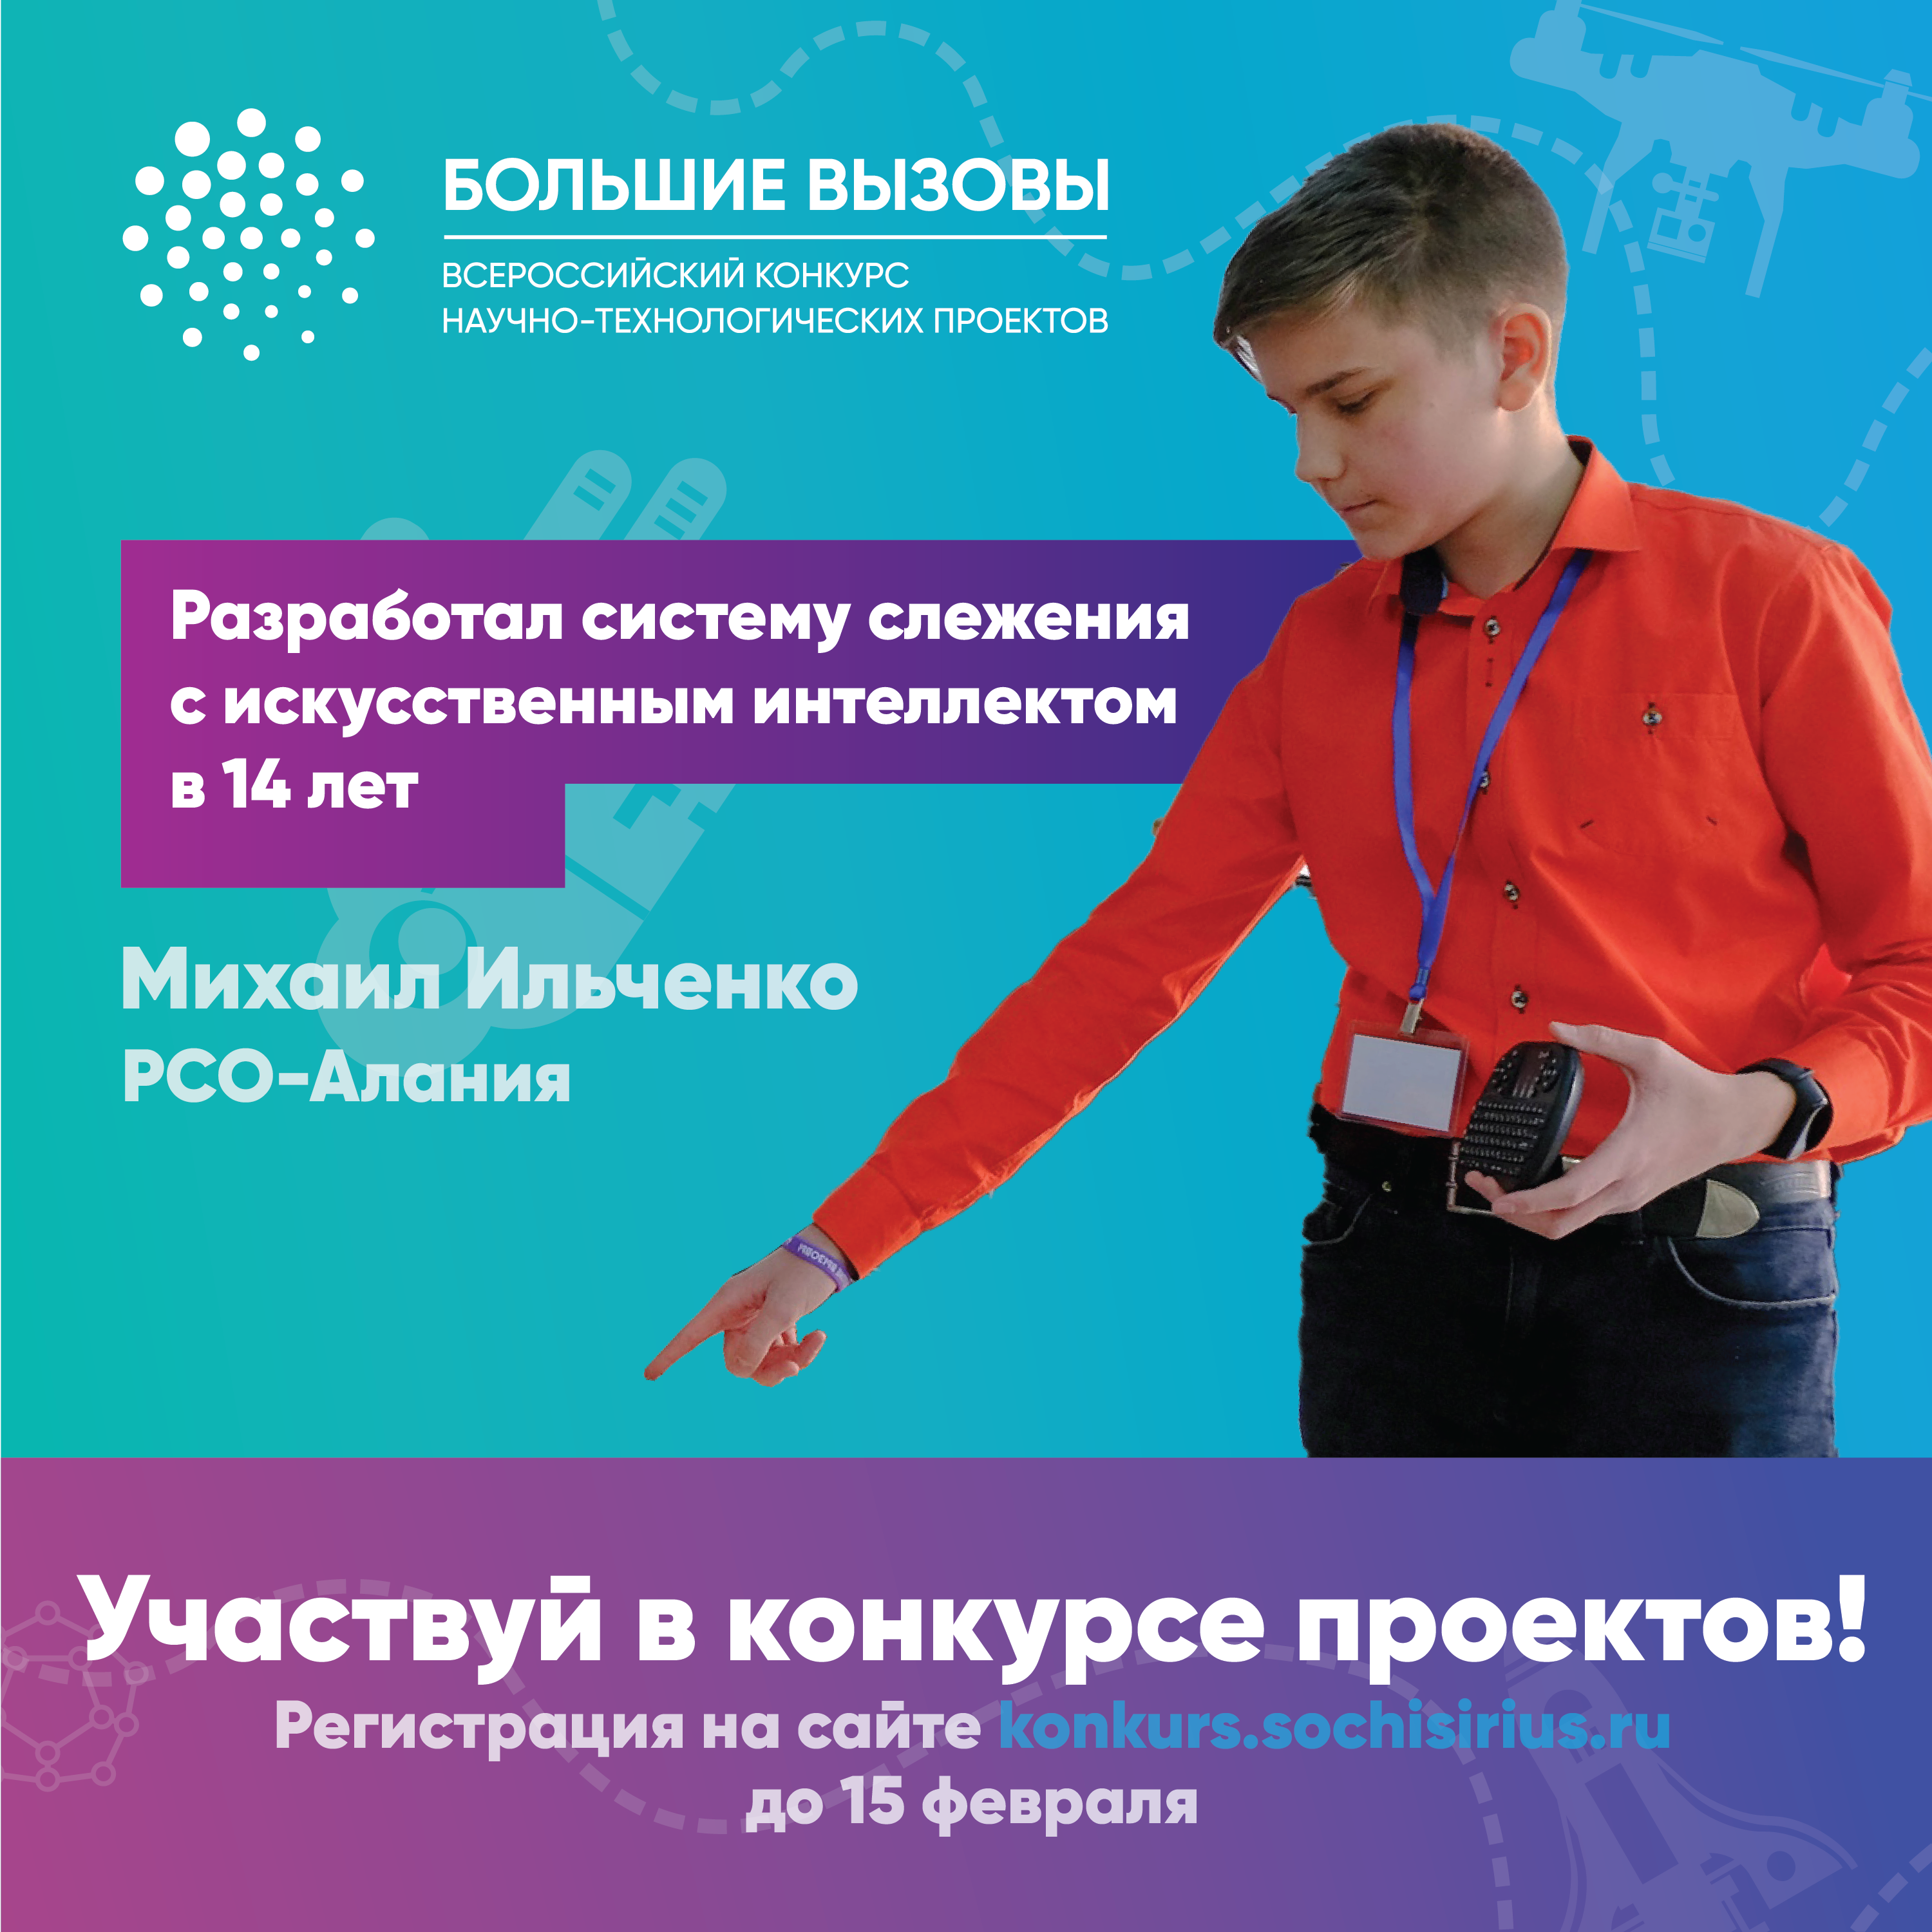 До 15 февраля принимаются заявки на всероссийский конкурс проектов "Большие вызовы"